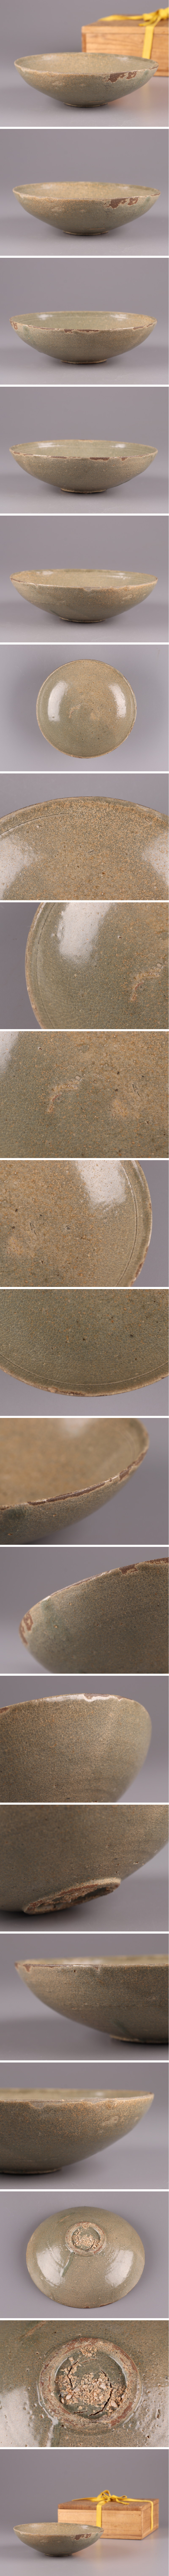 古美術 朝鮮古陶磁器 高麗青磁 鉢 古作 時代物 極上品 初だし品 3572 